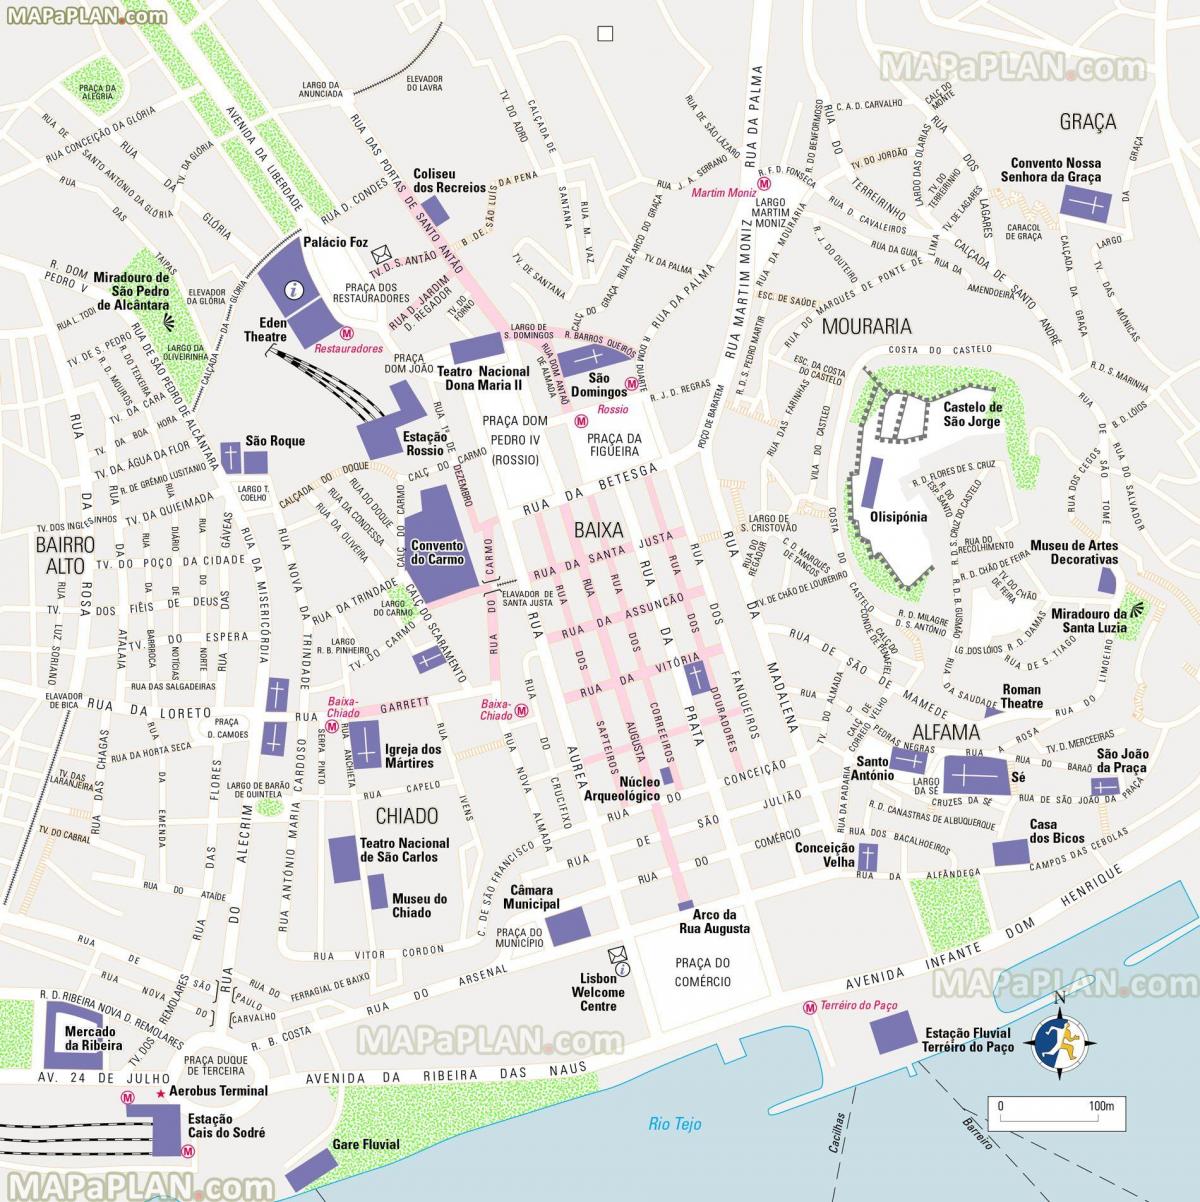 Mapa pieszych wycieczek po Lizbonie